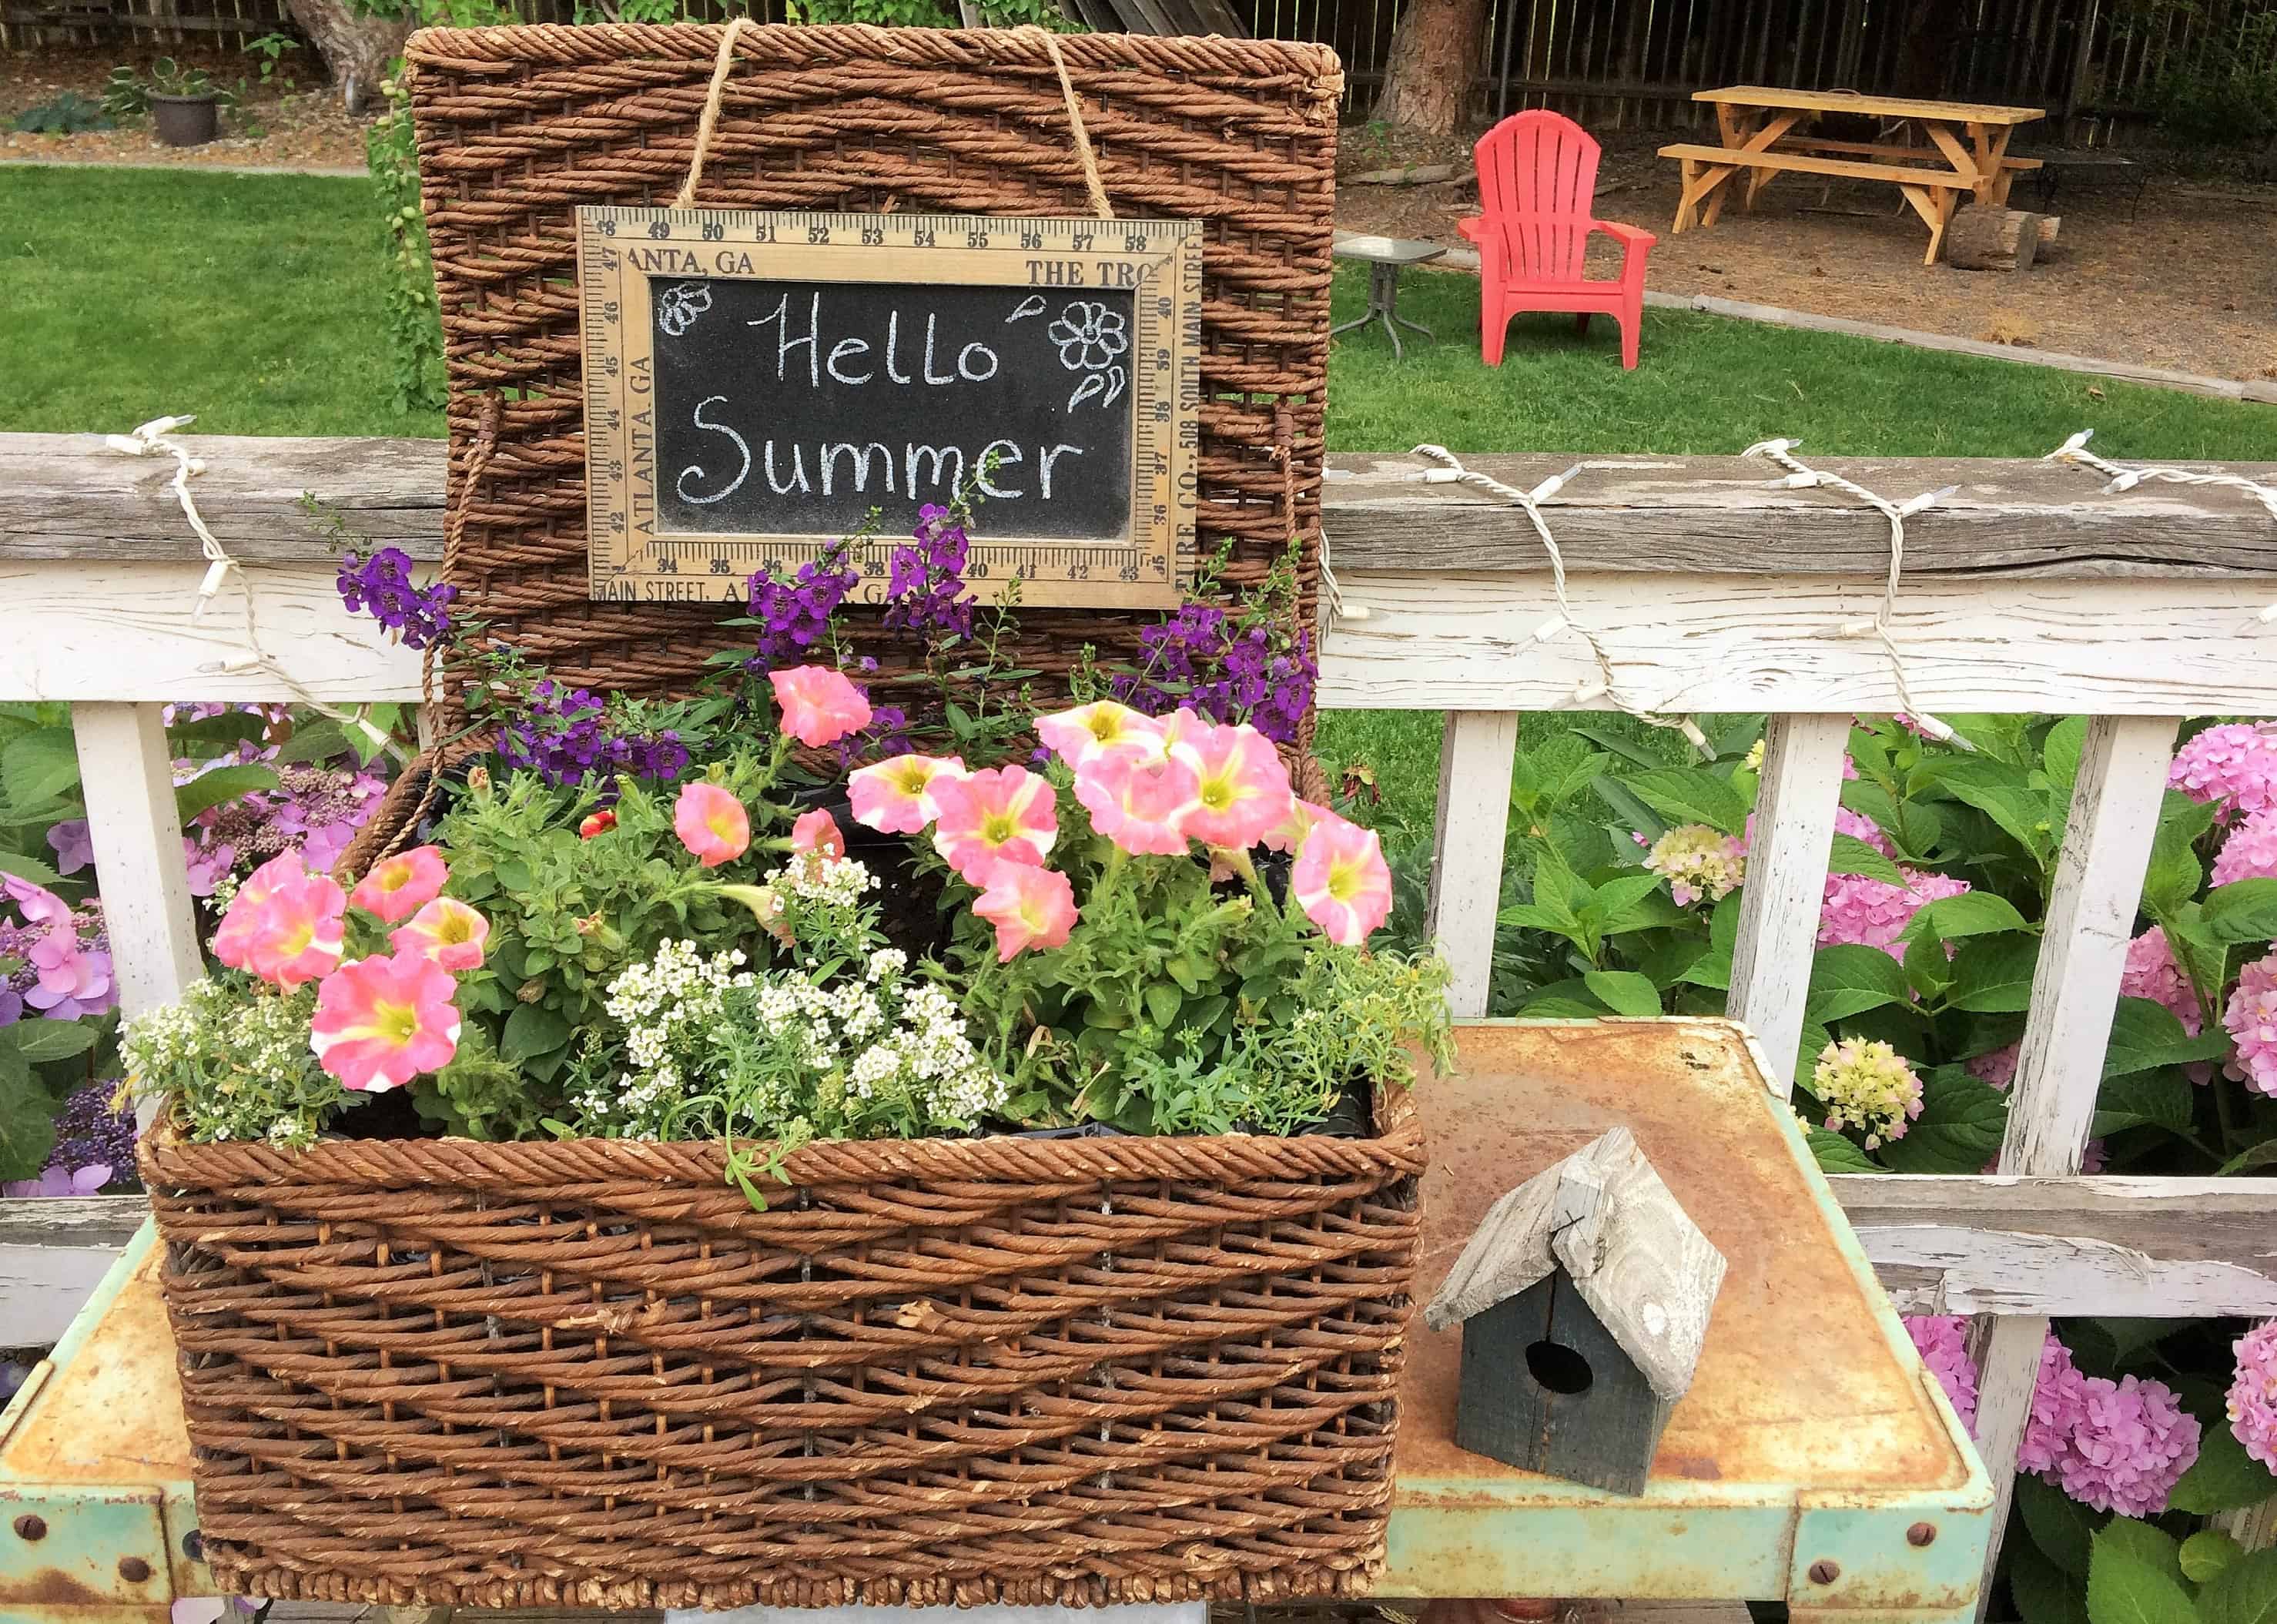 Flowers growing in wicker baskets with Blackboard Sign Hello Summer